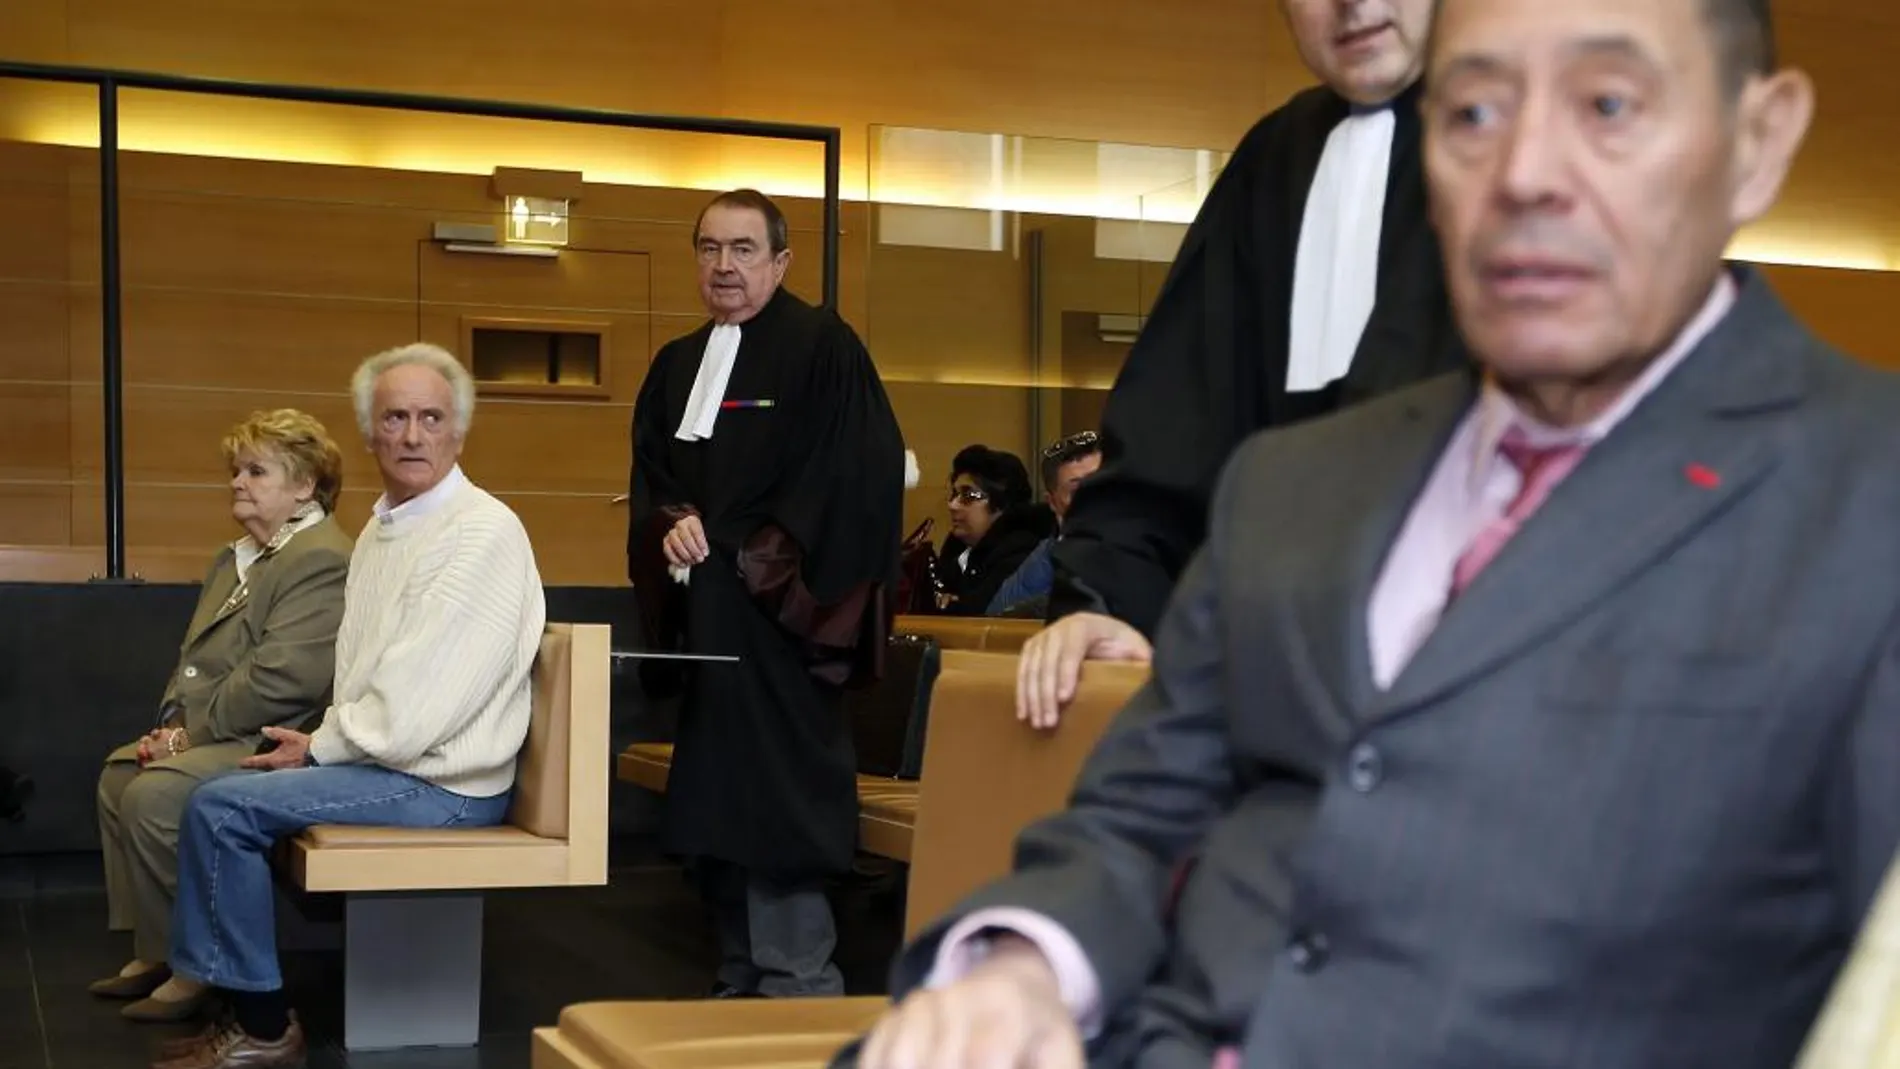 Pierre Le Guennec y su mujer Danielle esperan el veredicto en presencia de Claude Ruiz Picasso (dcha)